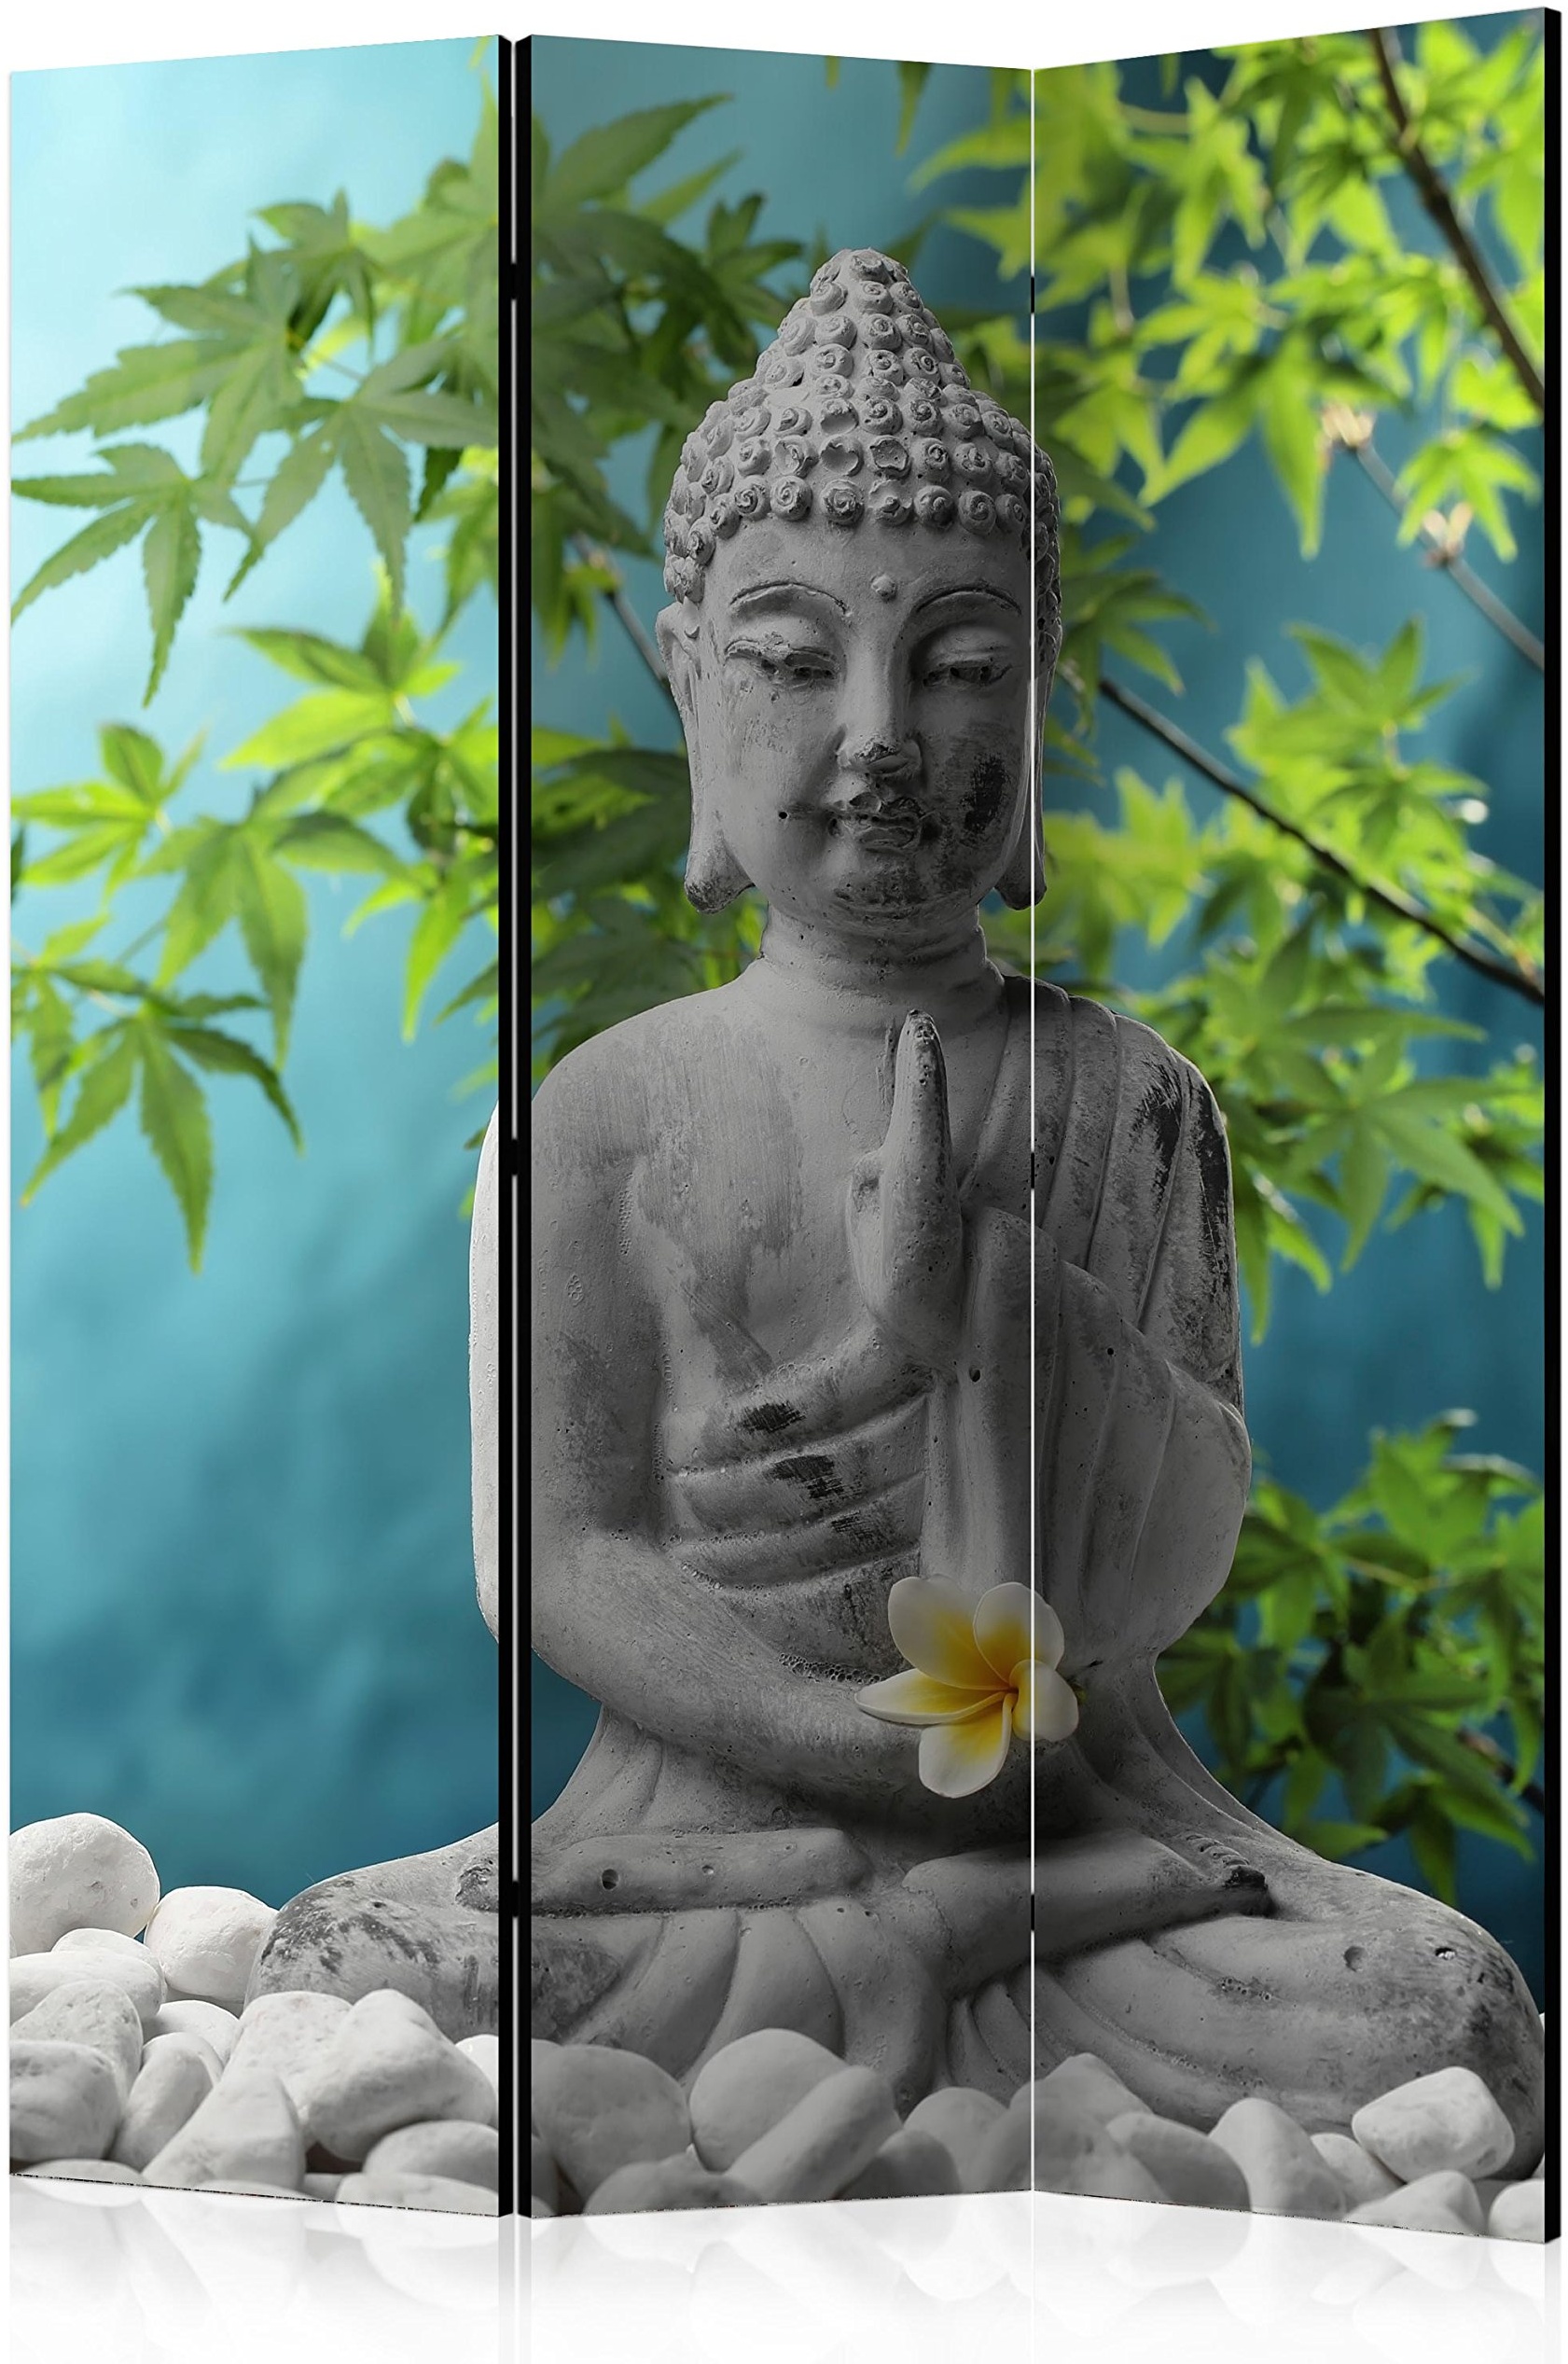 murando Raumteiler Spa Zen Buddha Foto Paravent 135x172 cm einseitig auf Vlies-Leinwand Bedruckt Trennwand Spanische Wand Sichtschutz Raumtrenner Home Office grau blau grün